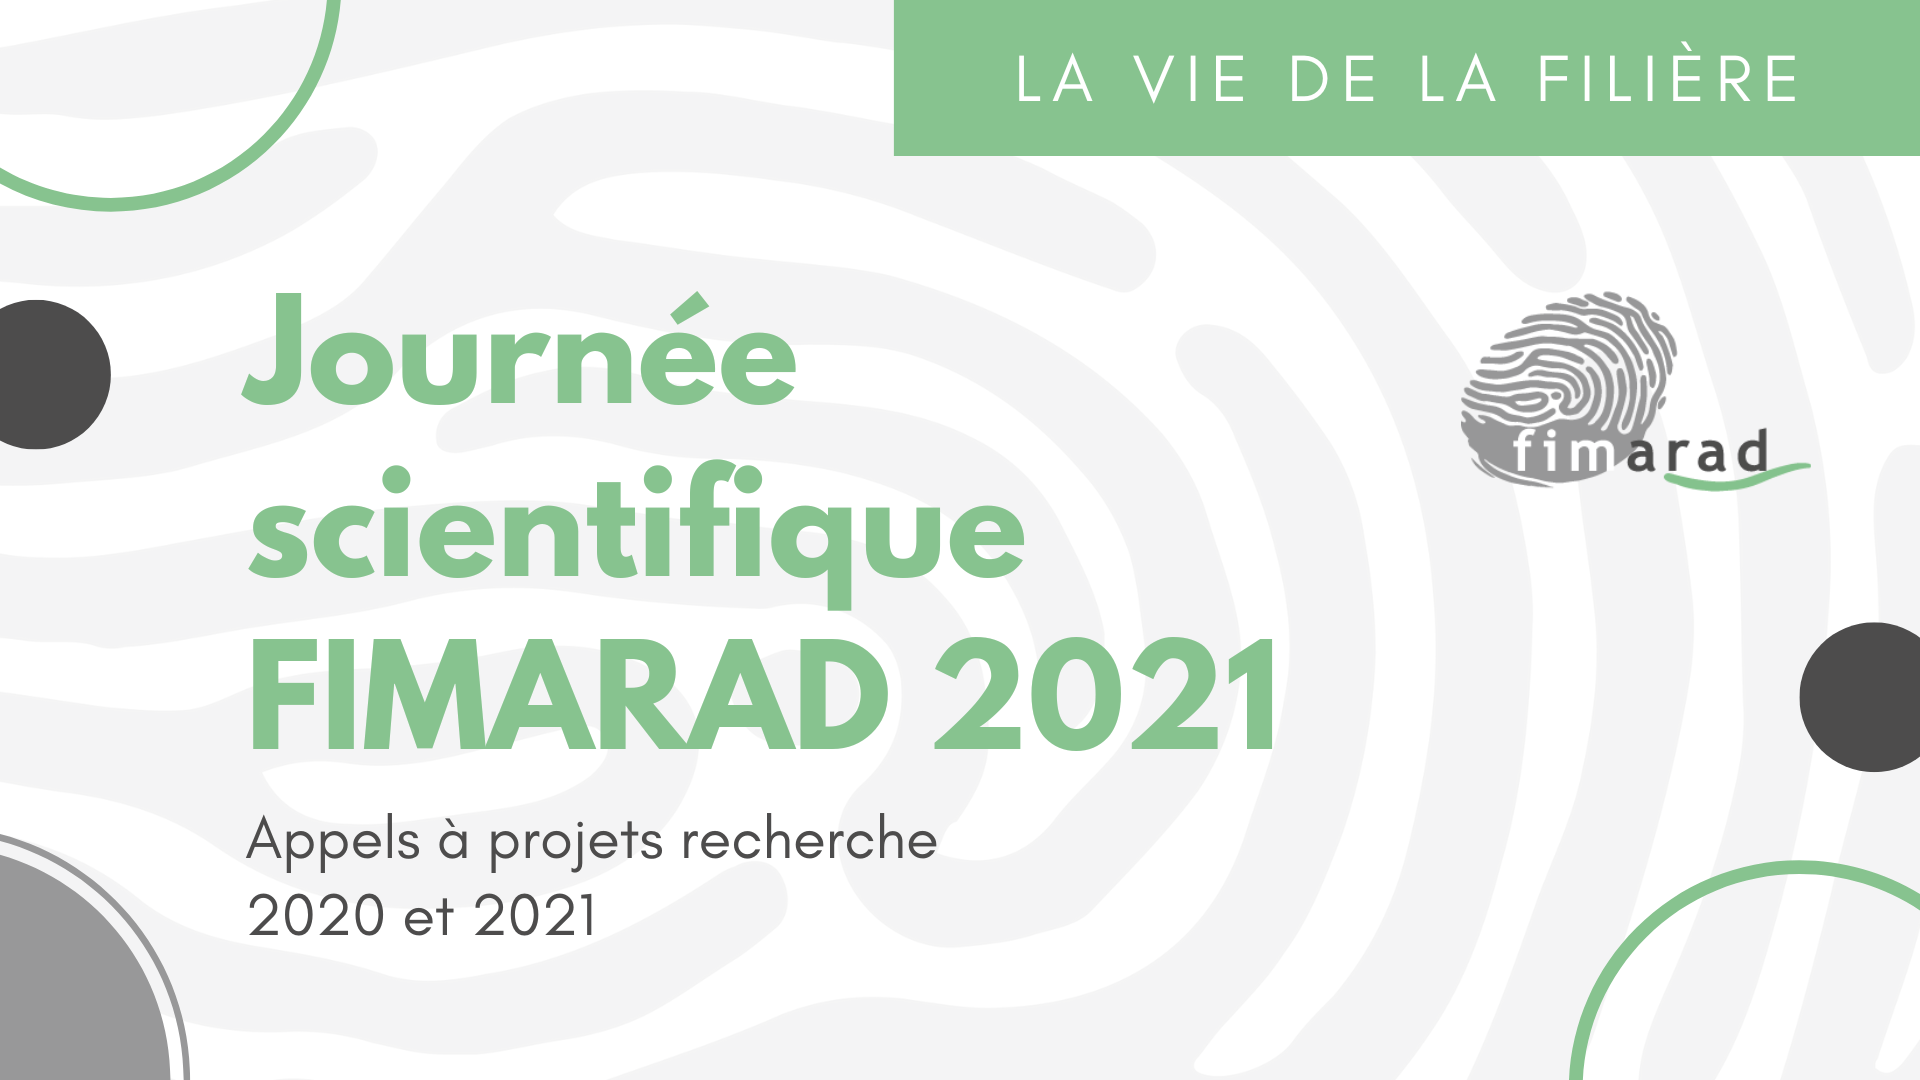 Appels à projets recherche 2020 et 2021 